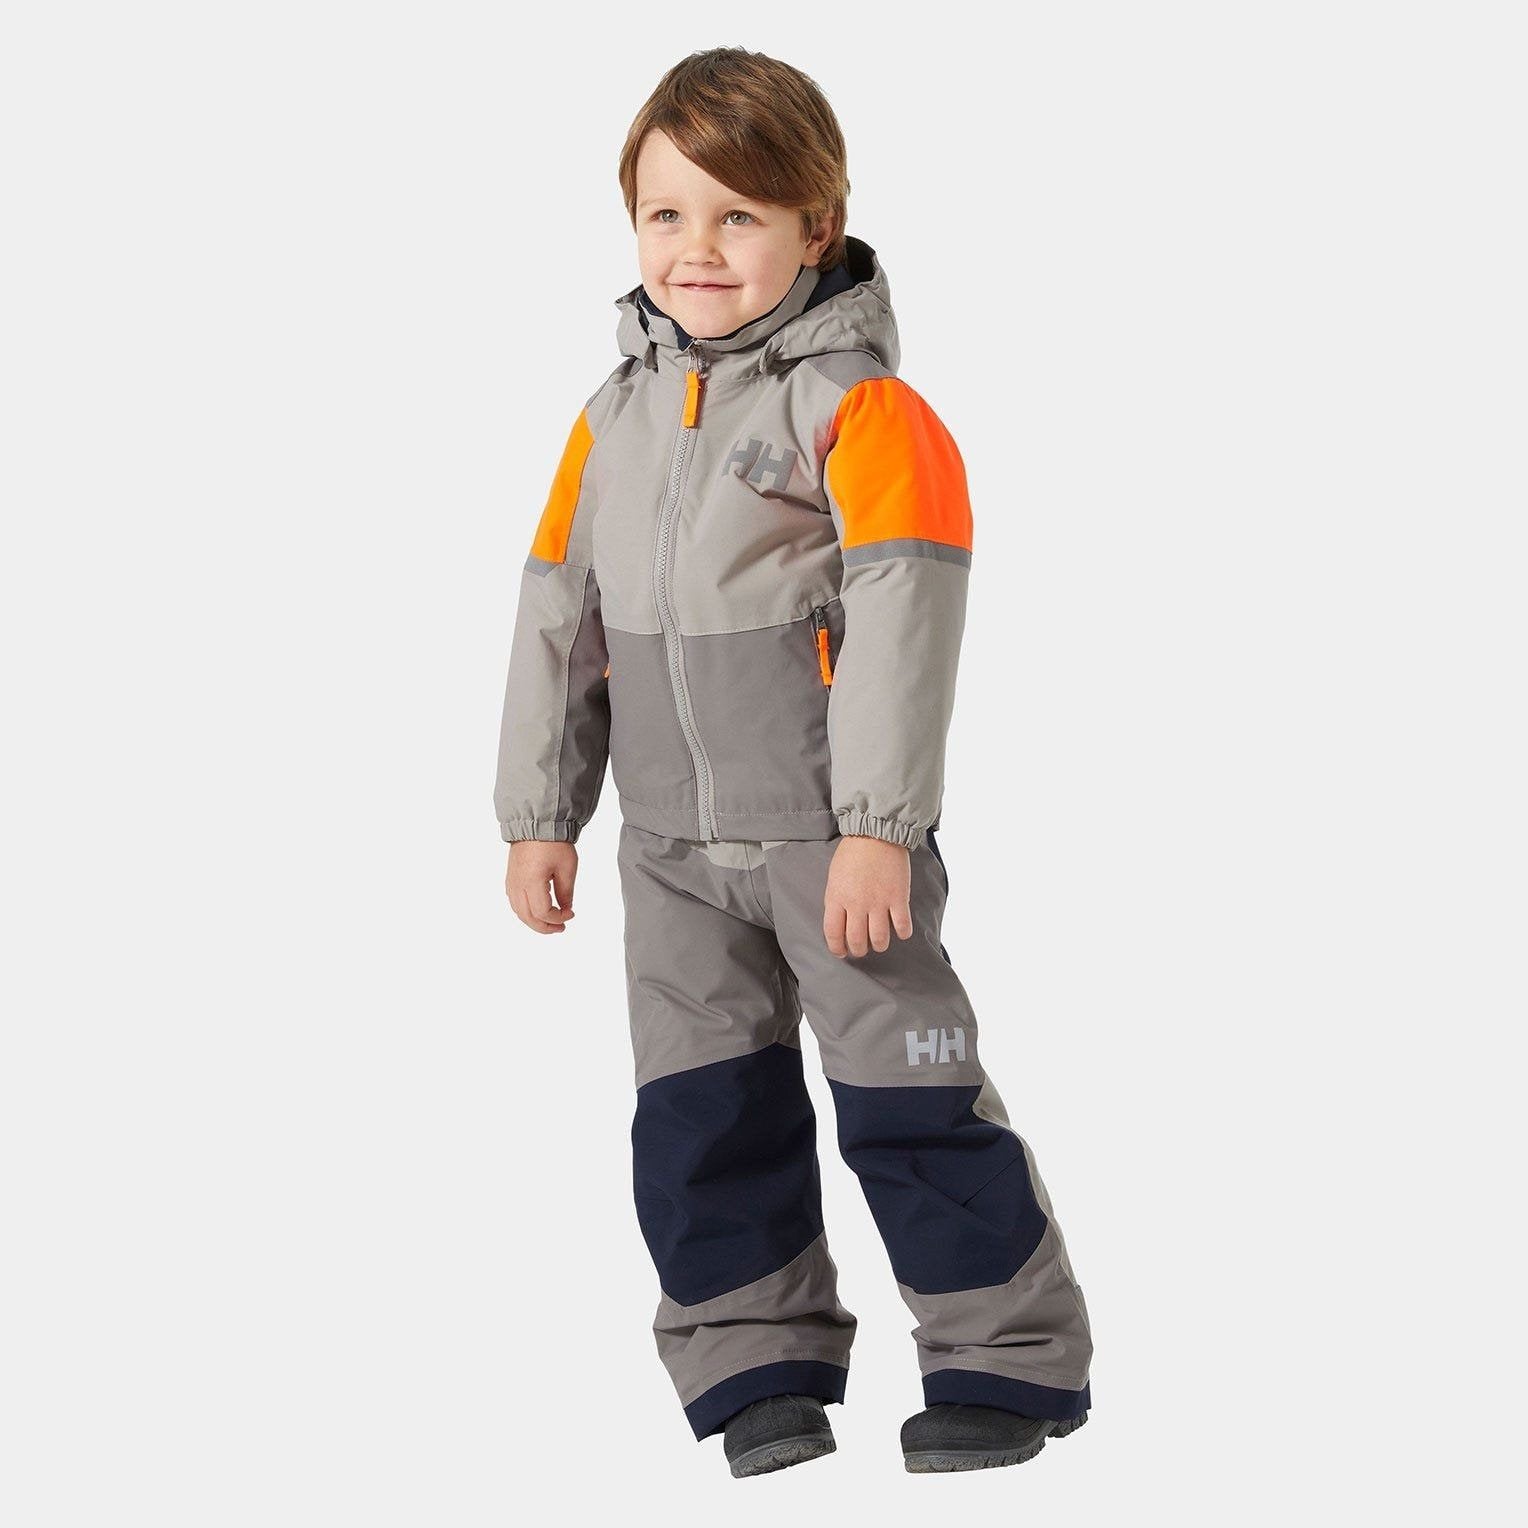 Helly Hansen - Kids Rider 2.0 Insulated Jacket in Concrete-SQ1856157